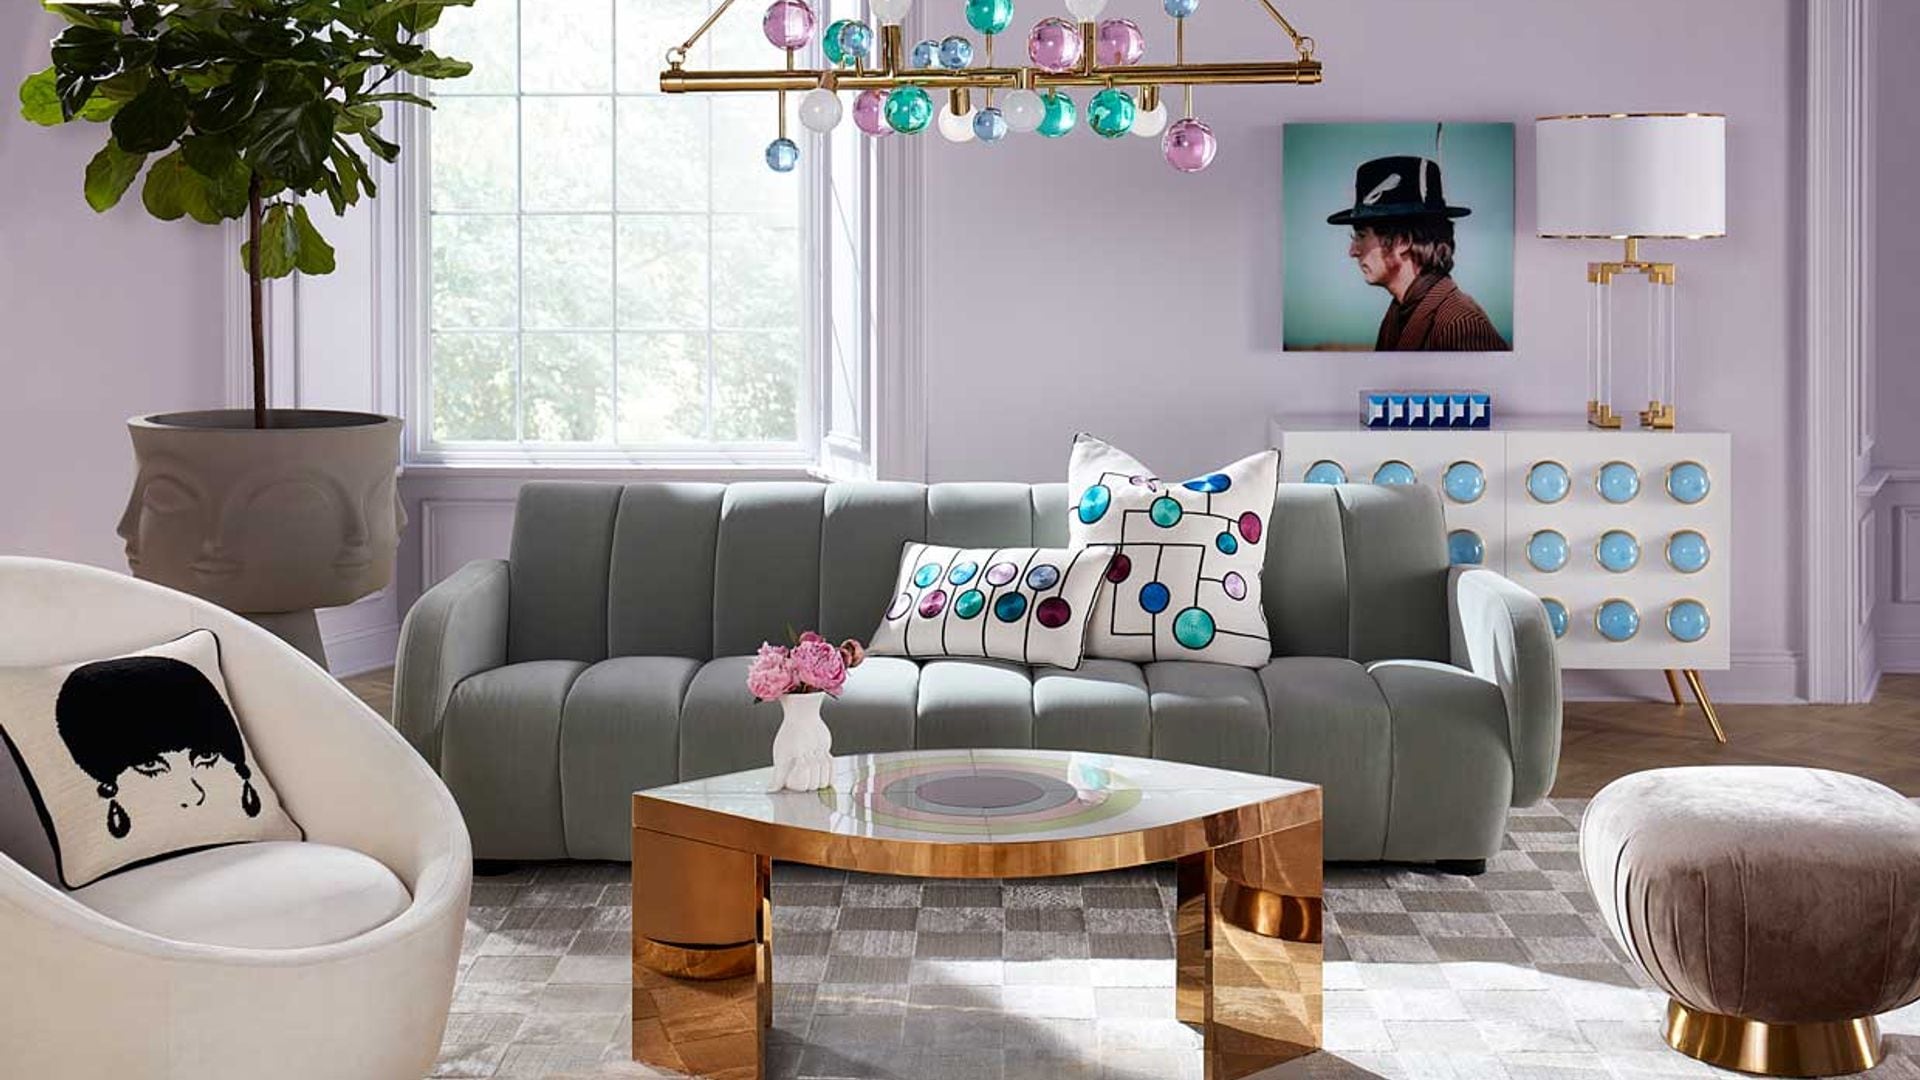 ¿No sabes qué cojines elegir para el sofá del salón? Busca inspiración en estos 15 'looks'